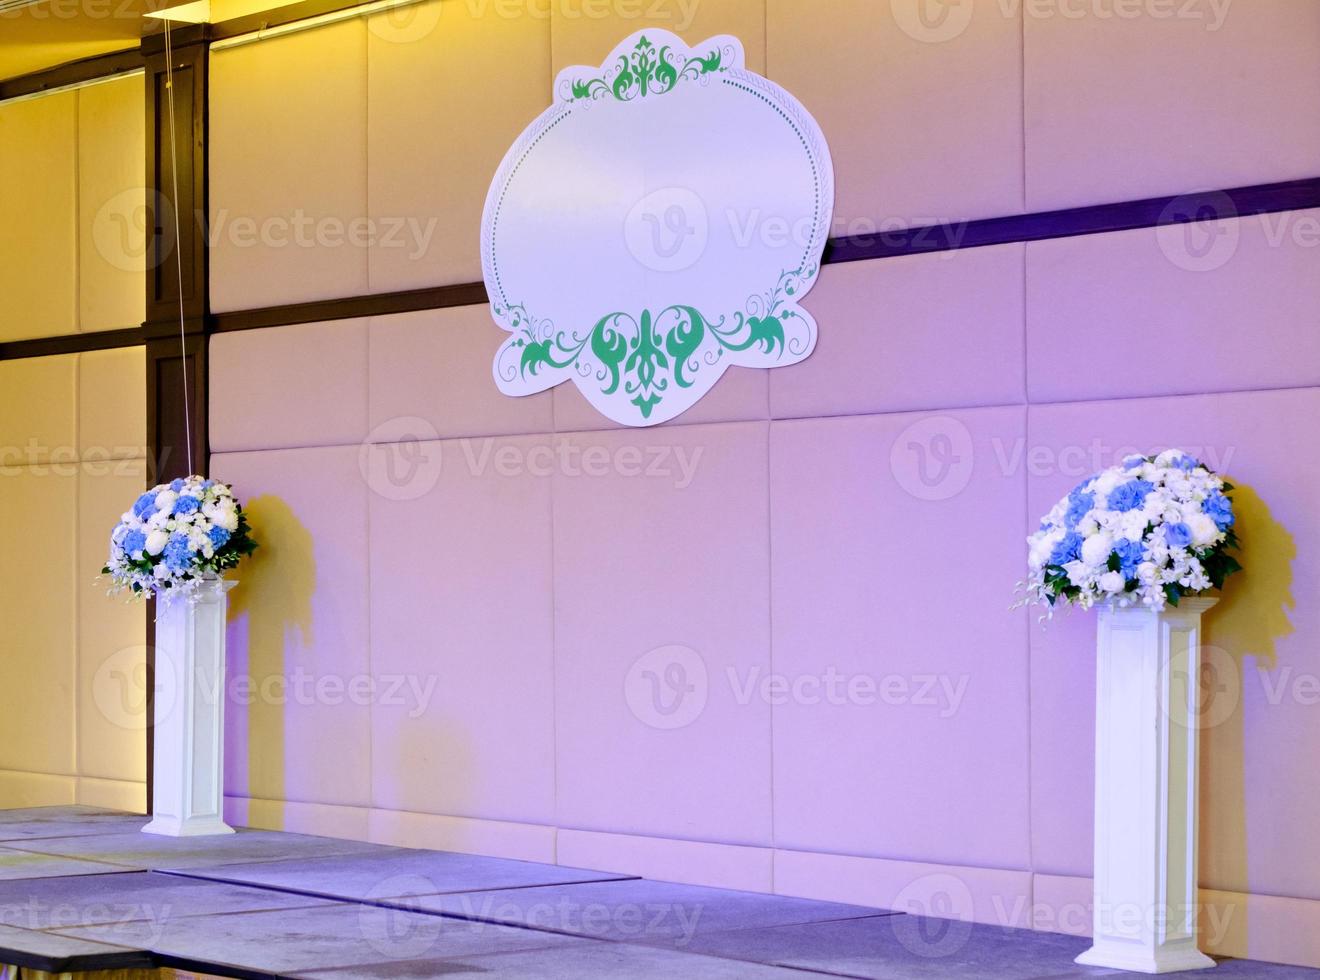 den tomma bröllopsscenen med blombuketten och dekorationsbrädan. foto